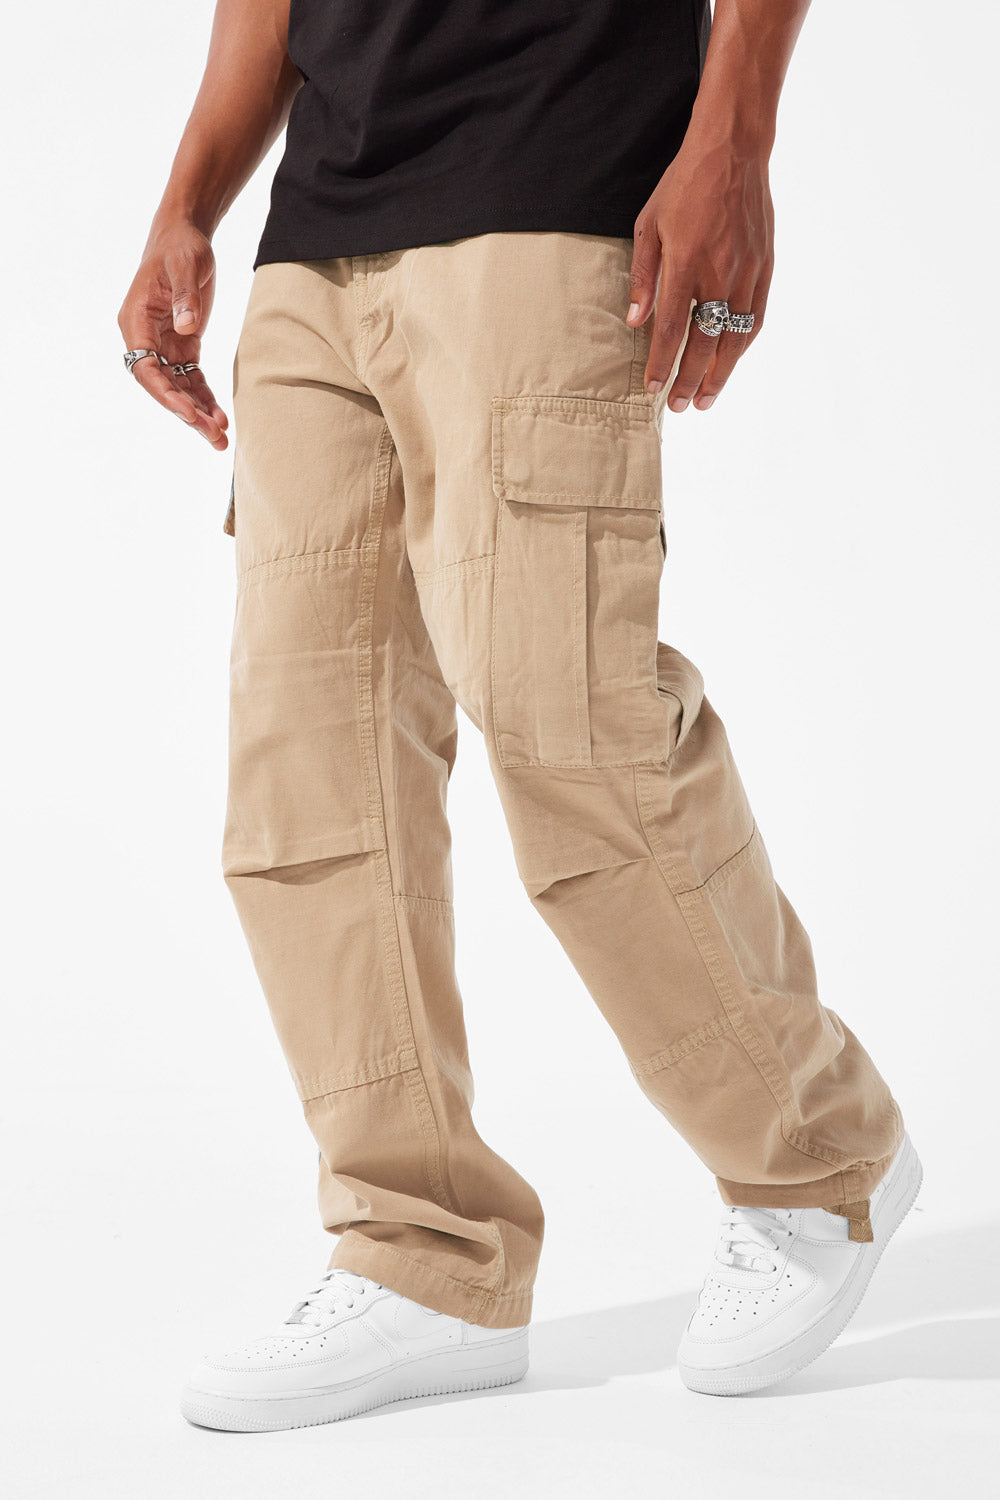 Brian - Airwalk Cargo Pants (Khaki)